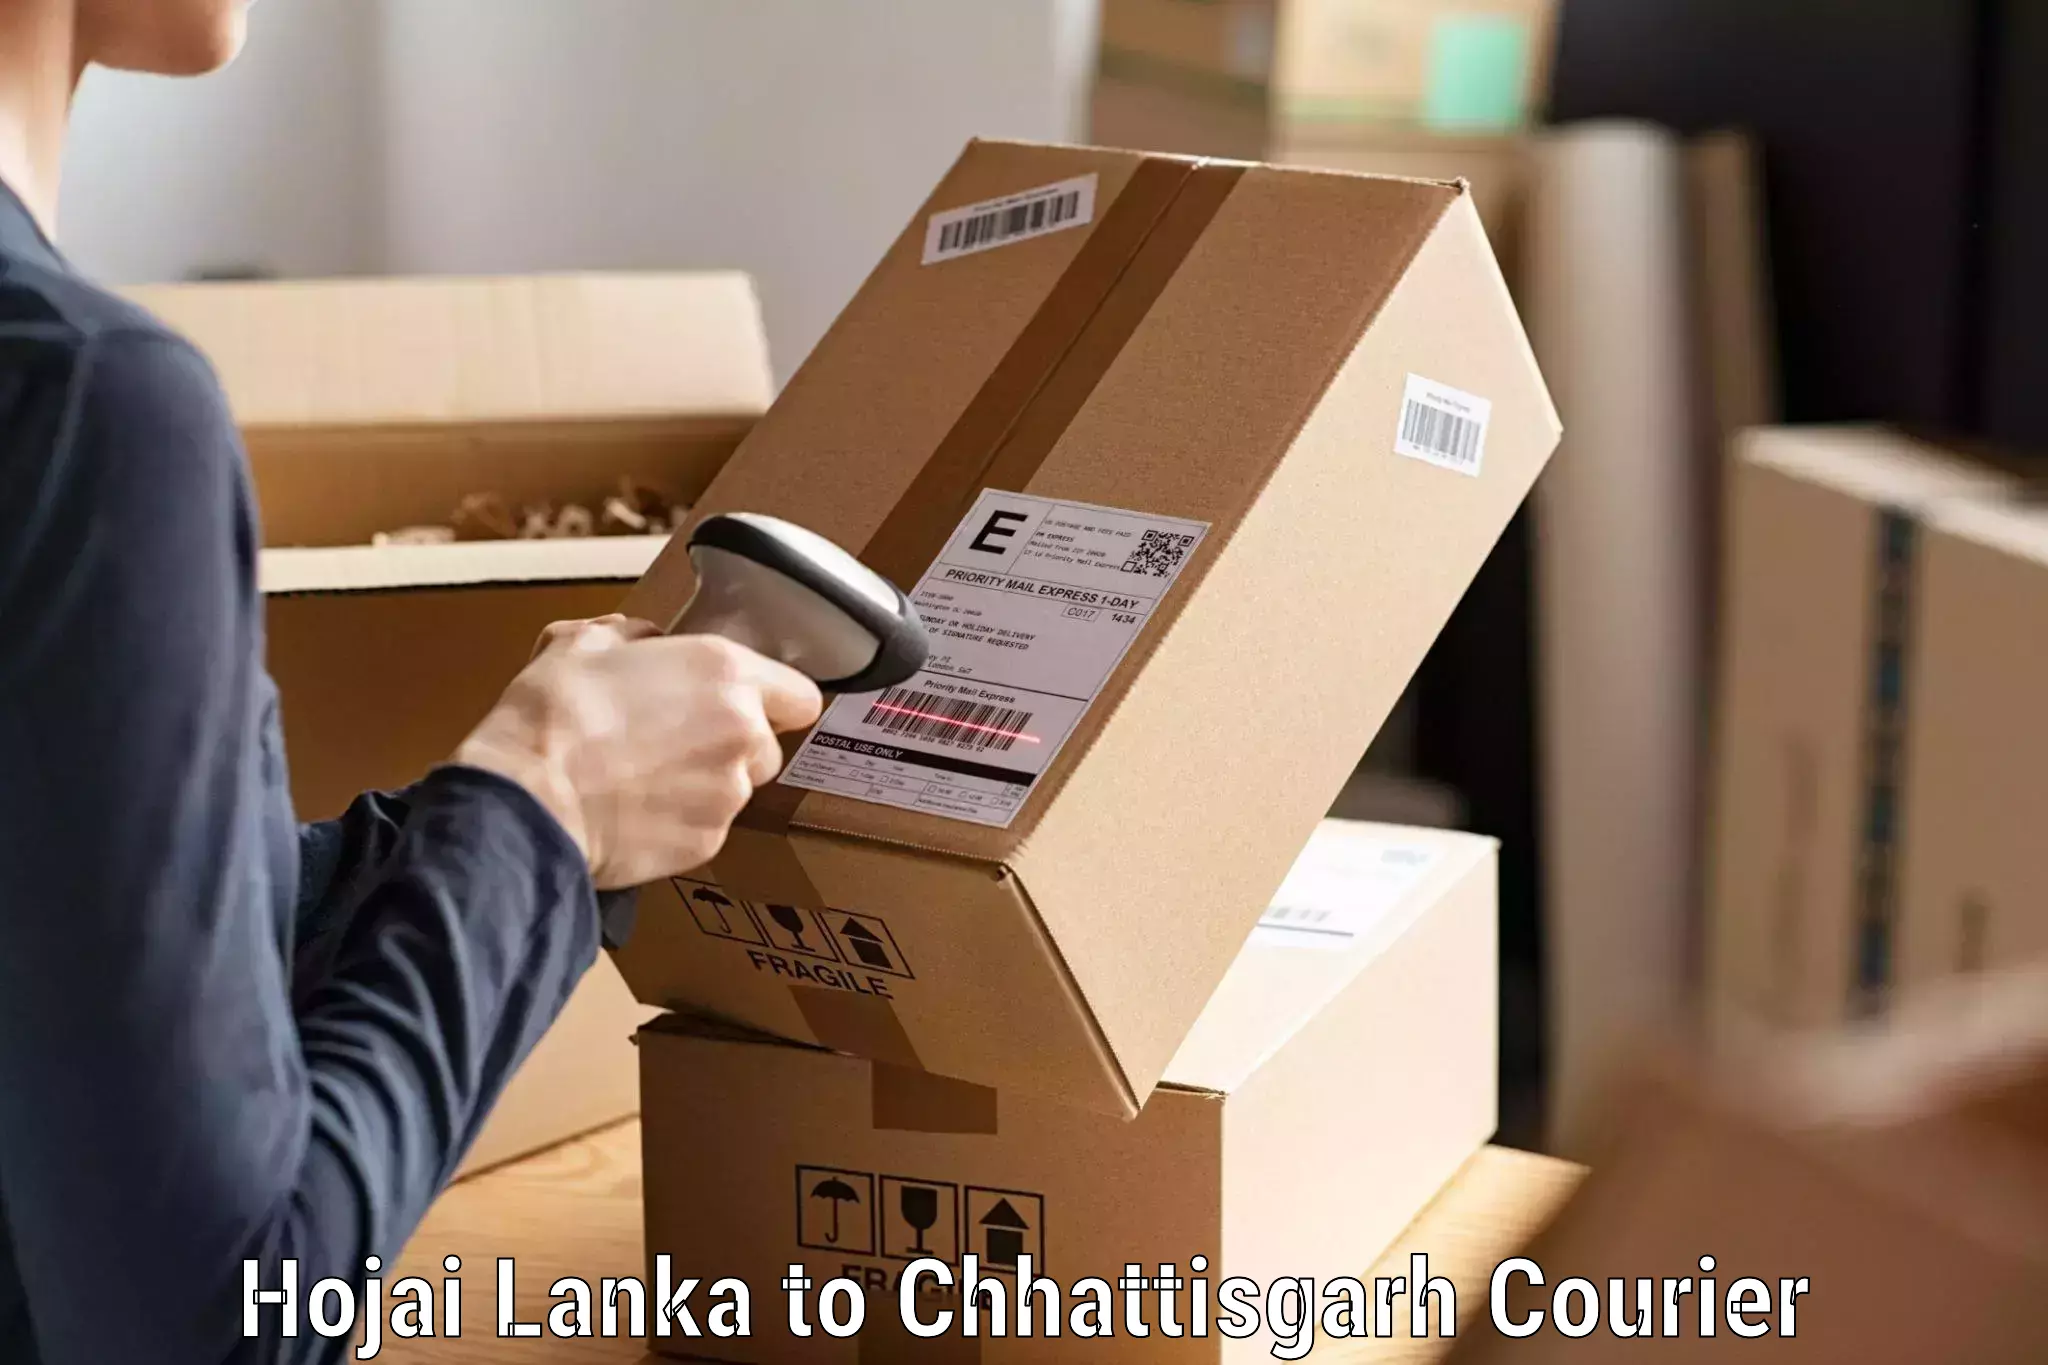 Smart parcel solutions in Hojai Lanka to Chhattisgarh